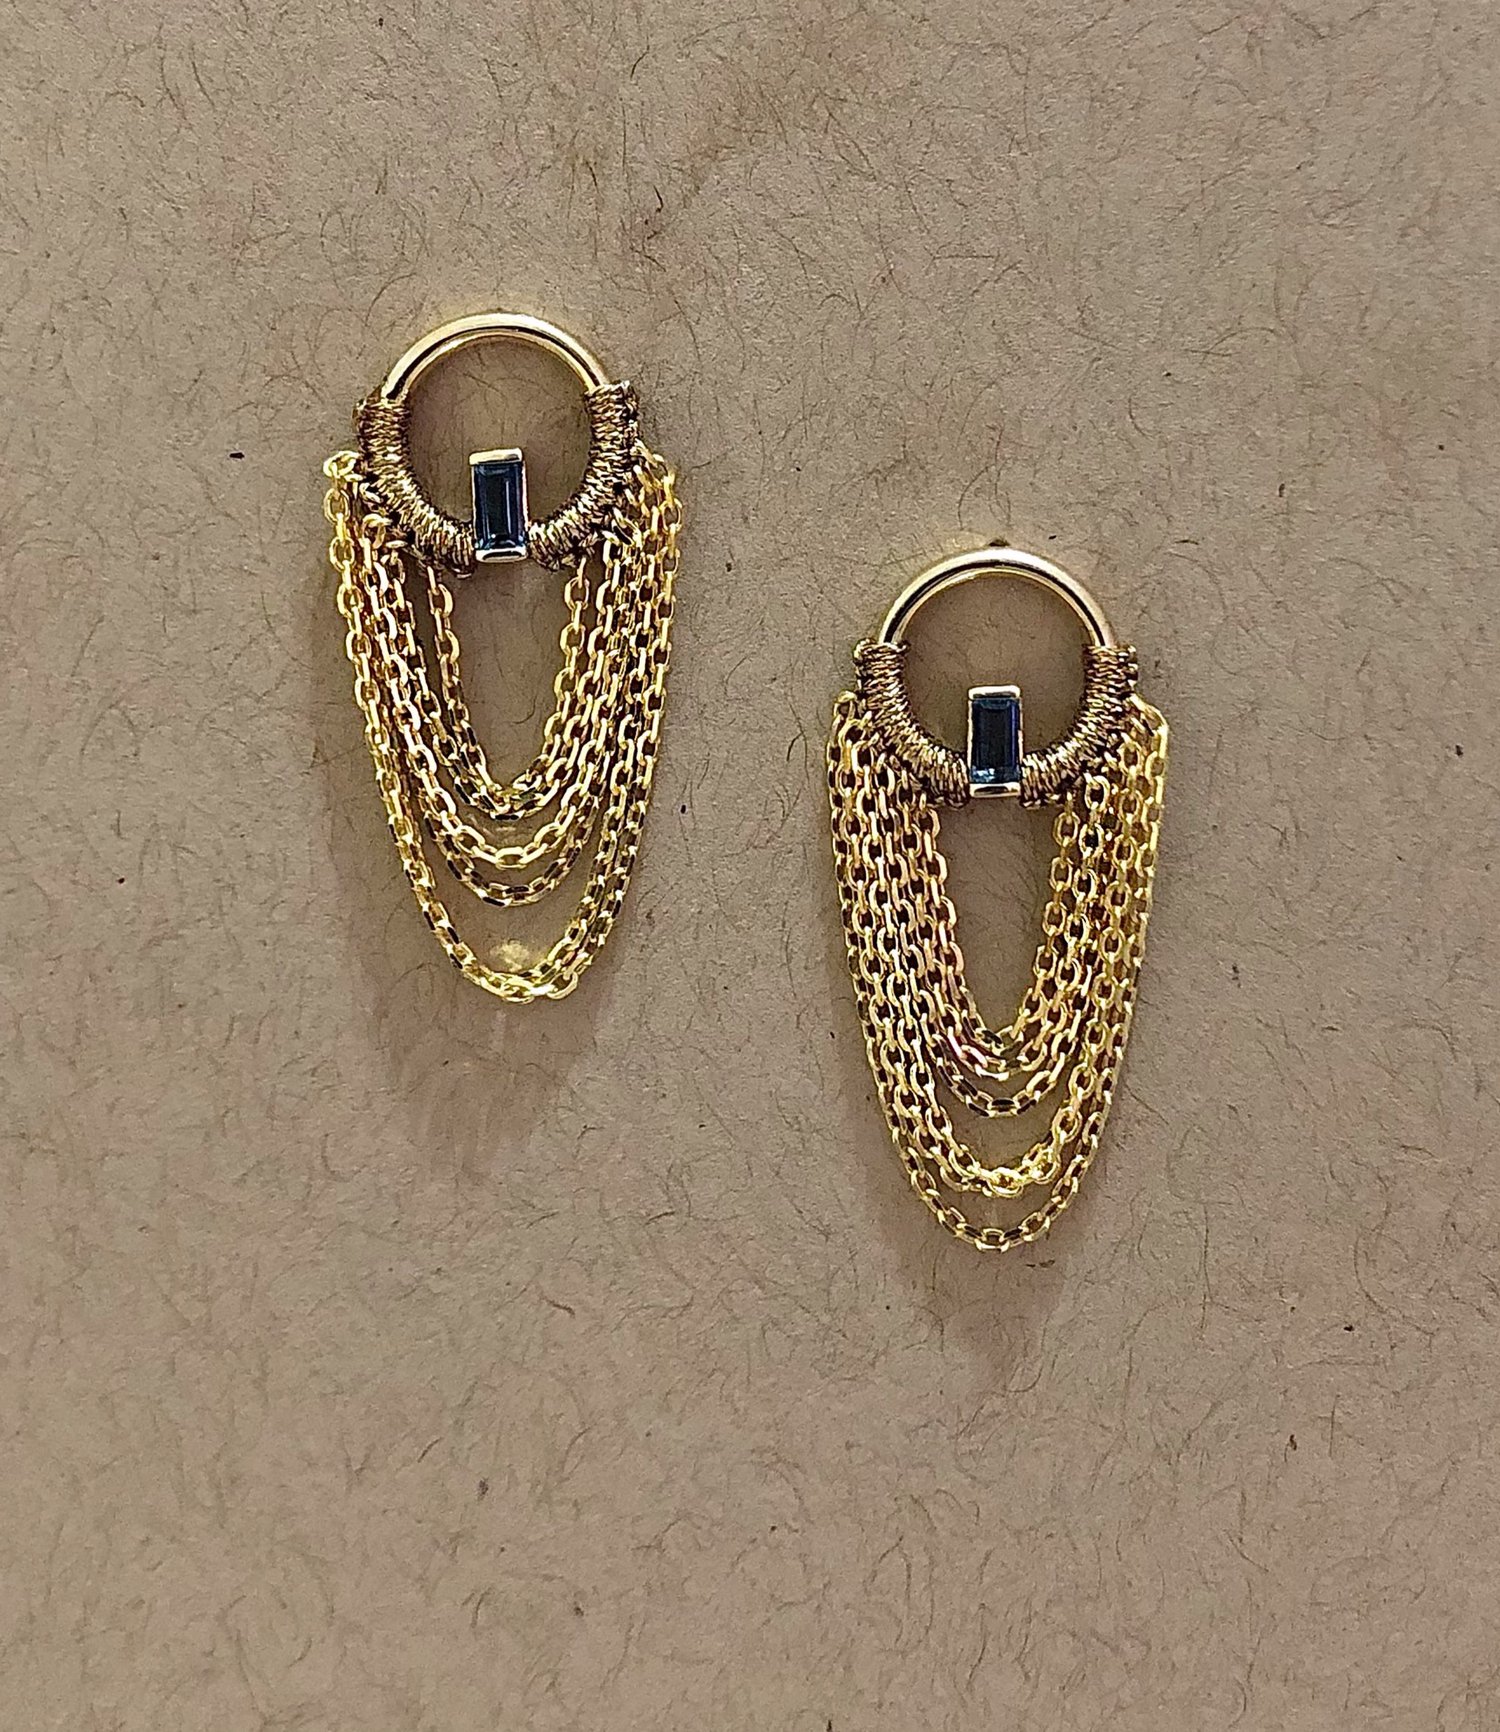 Gucci Vintage Yellow Gold Hoop Earrings